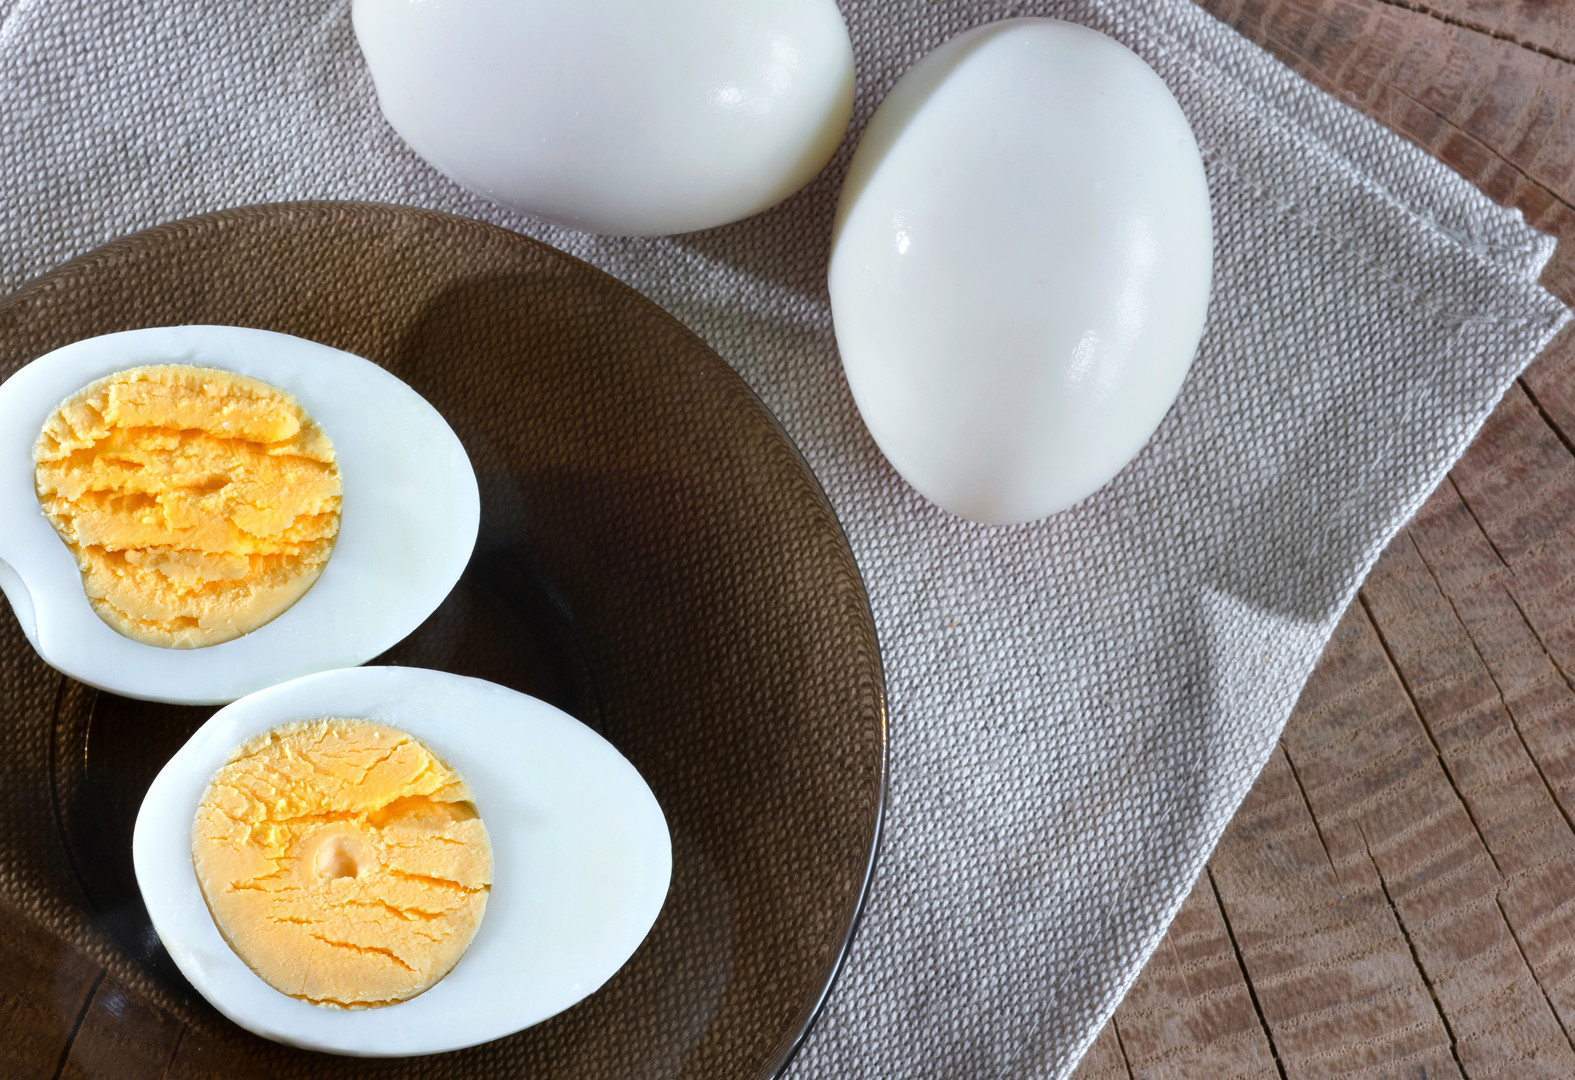 Előfordul, hogy amikor megfőzzük a tojást, akkor annak sárgája és fehérjéje között vékony, szürkés-zöldes réteg alakul ki. Erre az egyik magyarázat a közhiedelem szerint, hogy innen lehet tudni, hogy a tojás régi vagy szennyezett, azonban pár éve az kezdett el terjedni a közösségi médiában, hogy az elszíneződés csak a génkezelt tojásnál jelenik meg. →